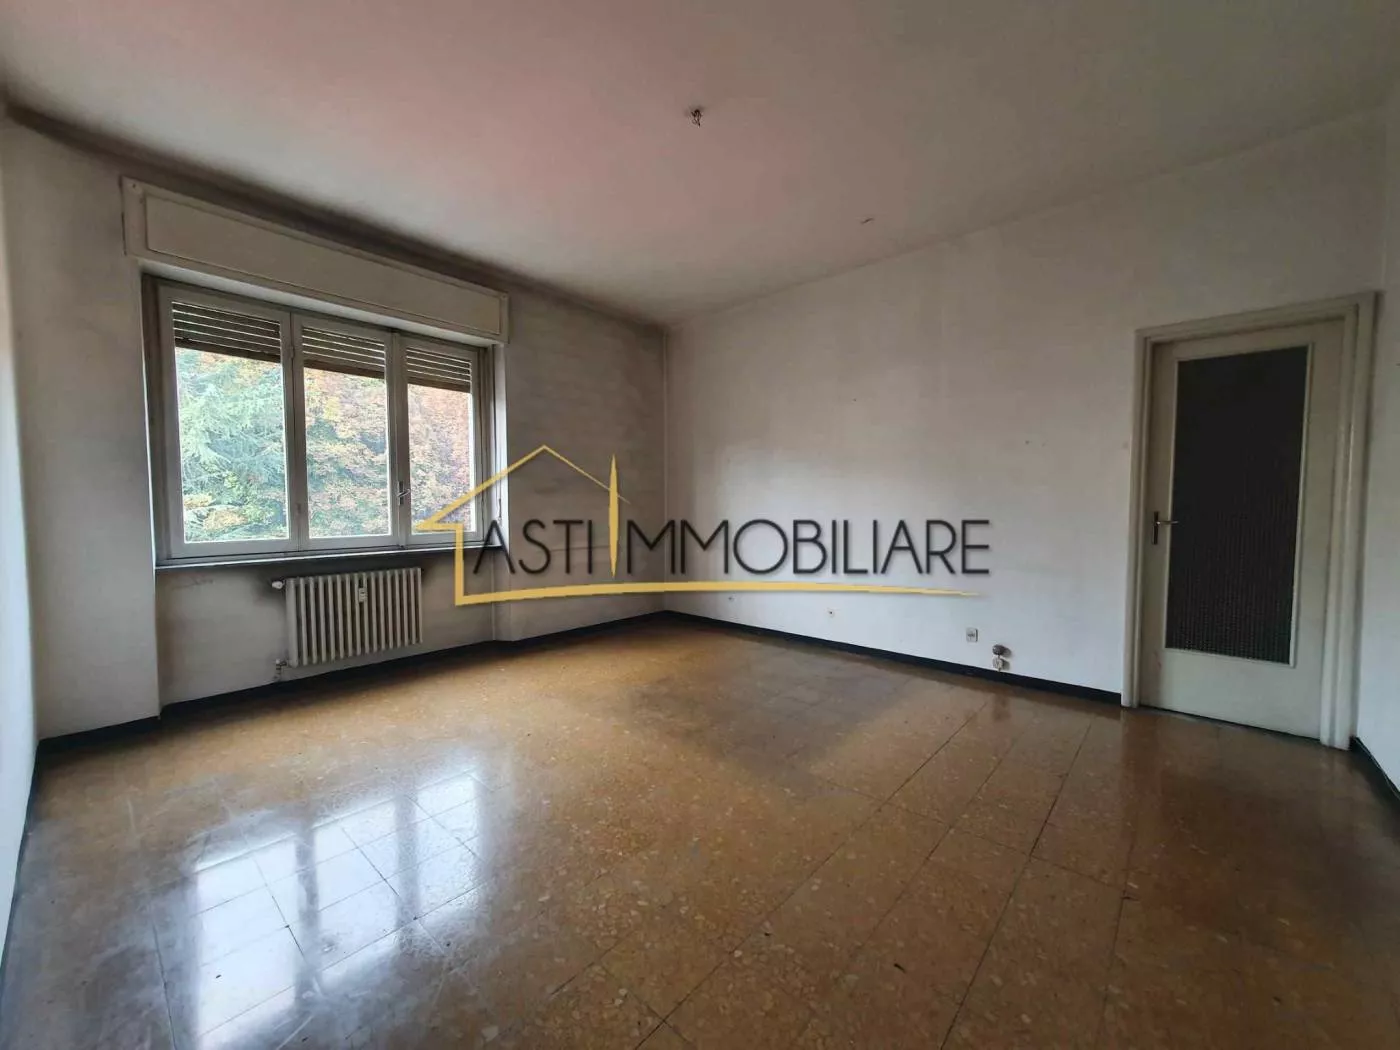 Immagine per Appartamento in Vendita a Asti Via Pietro Micca 15